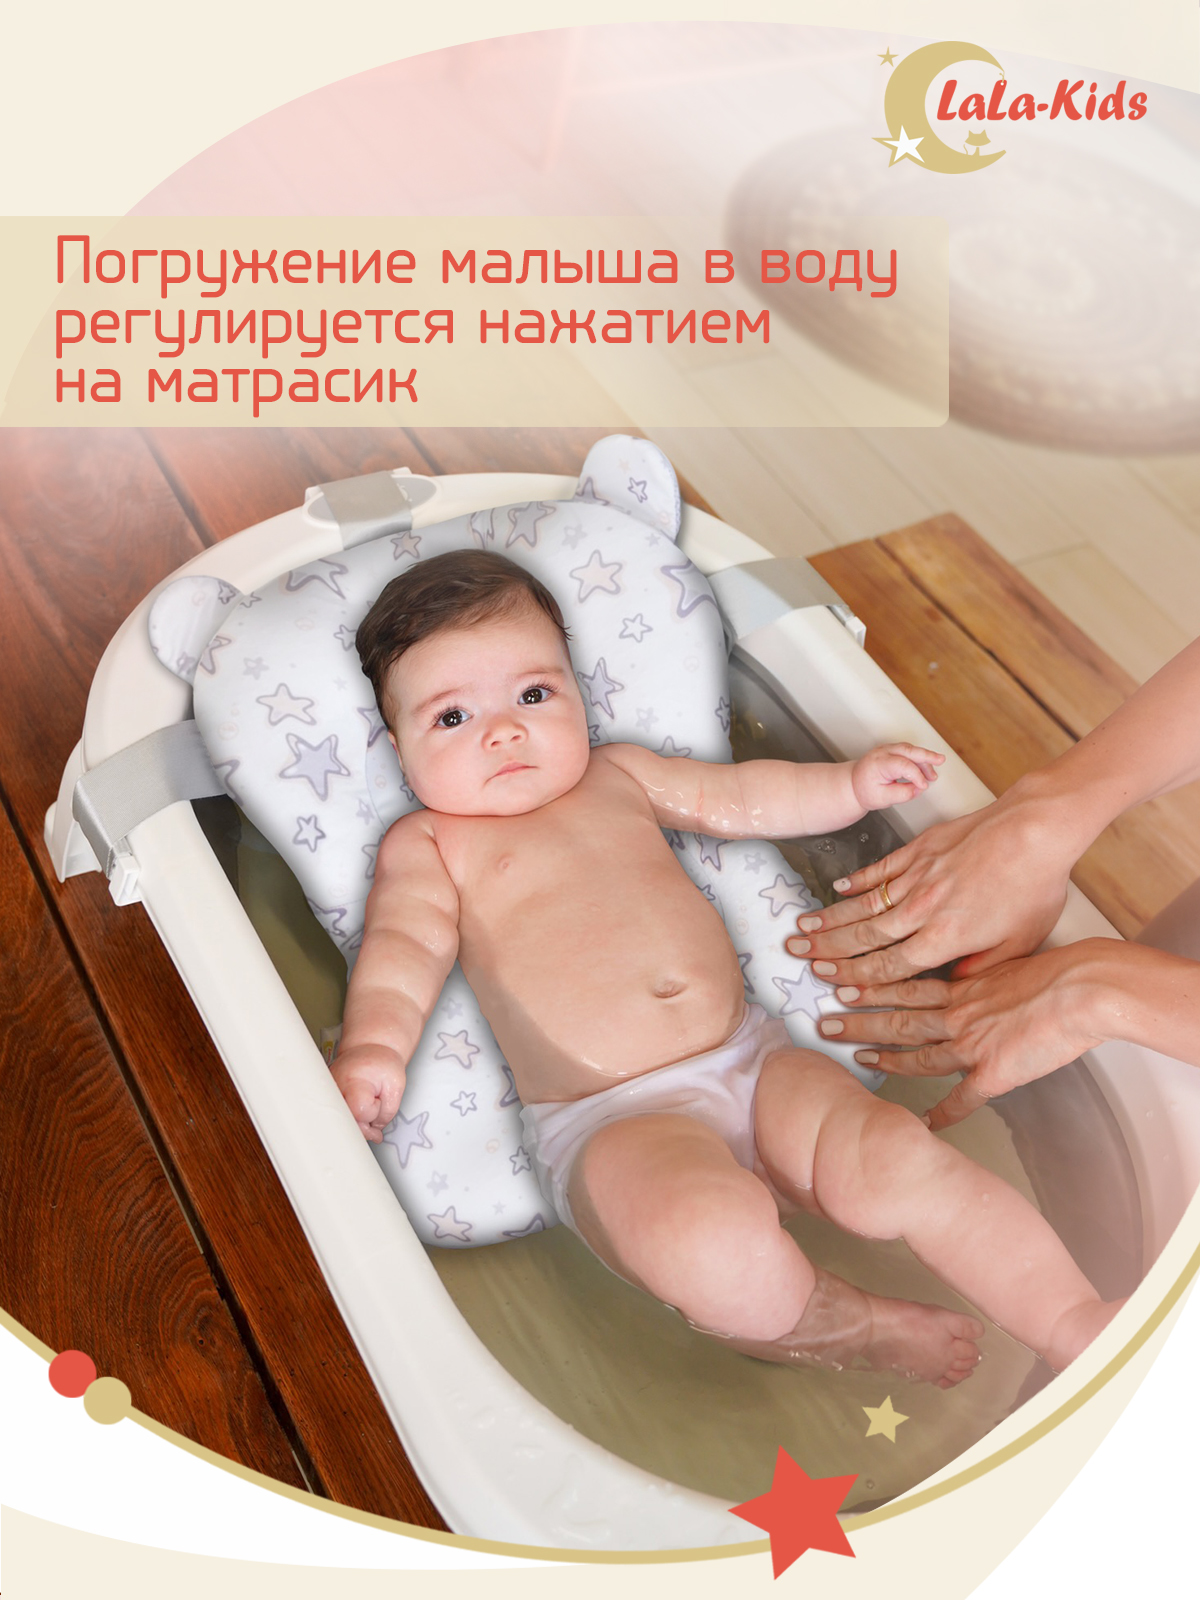 Детская ванночка с термометром LaLa-Kids складная с матрасиком песочным в комплекте - фото 18